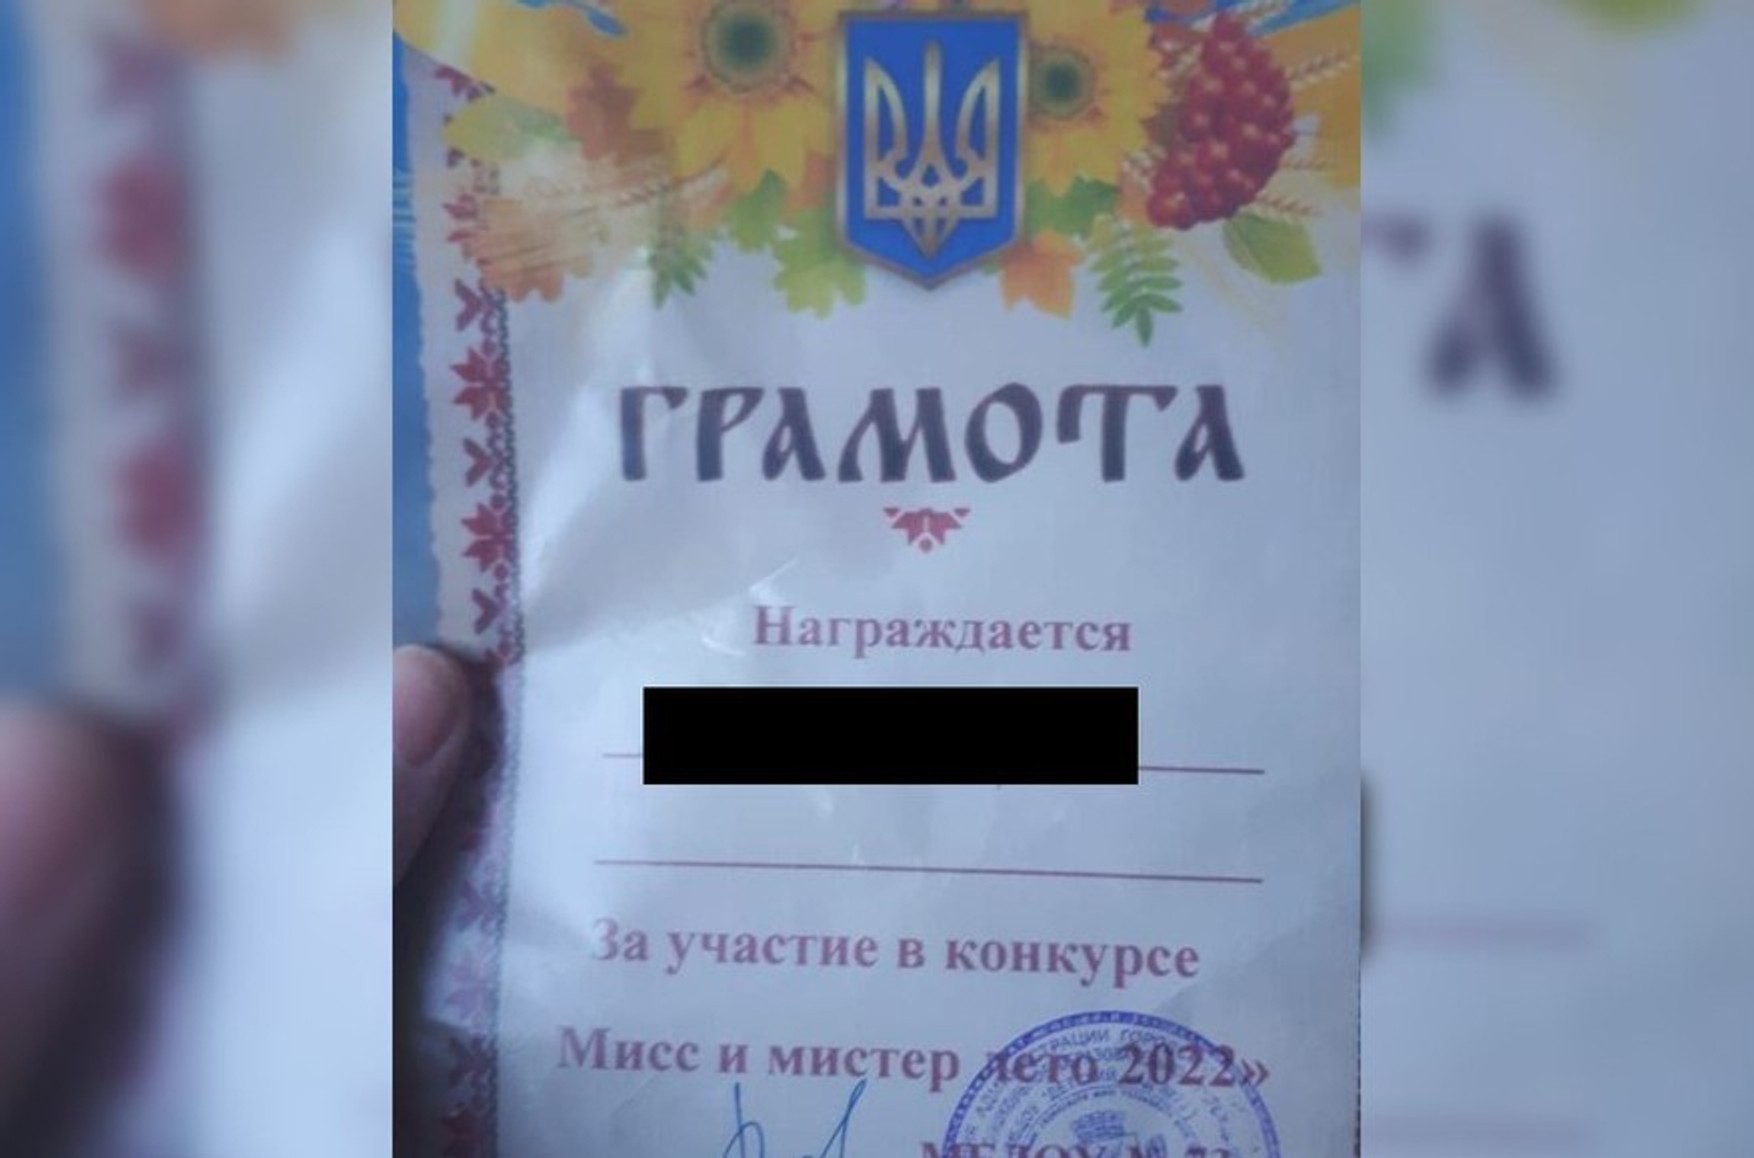 Читинский детский сад проверят из-за грамот с гербом Украины